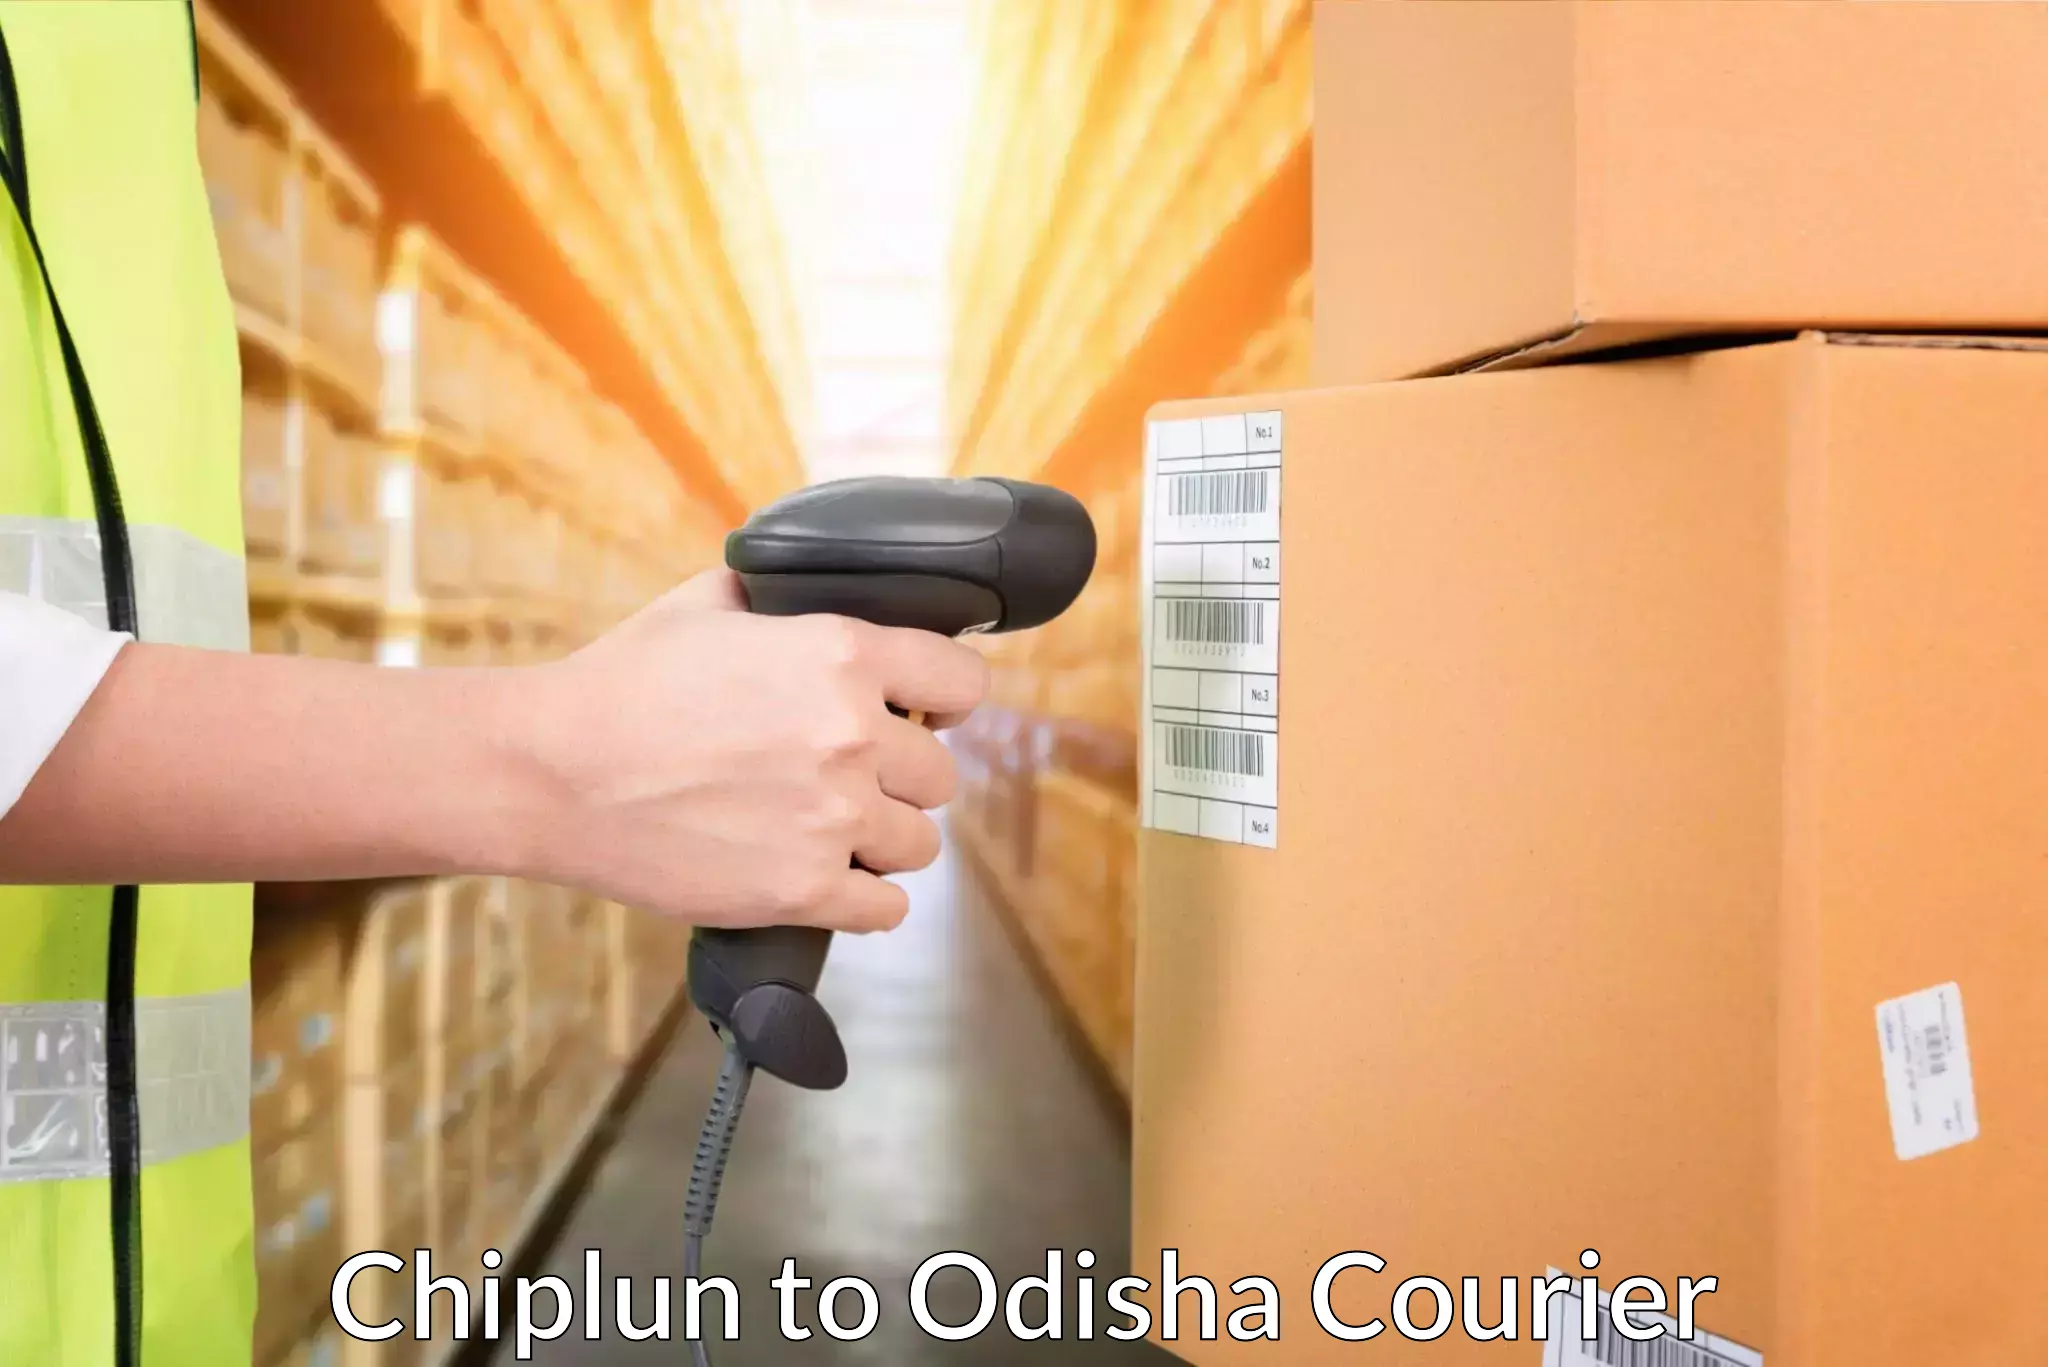 Courier service comparison Chiplun to Jajpur